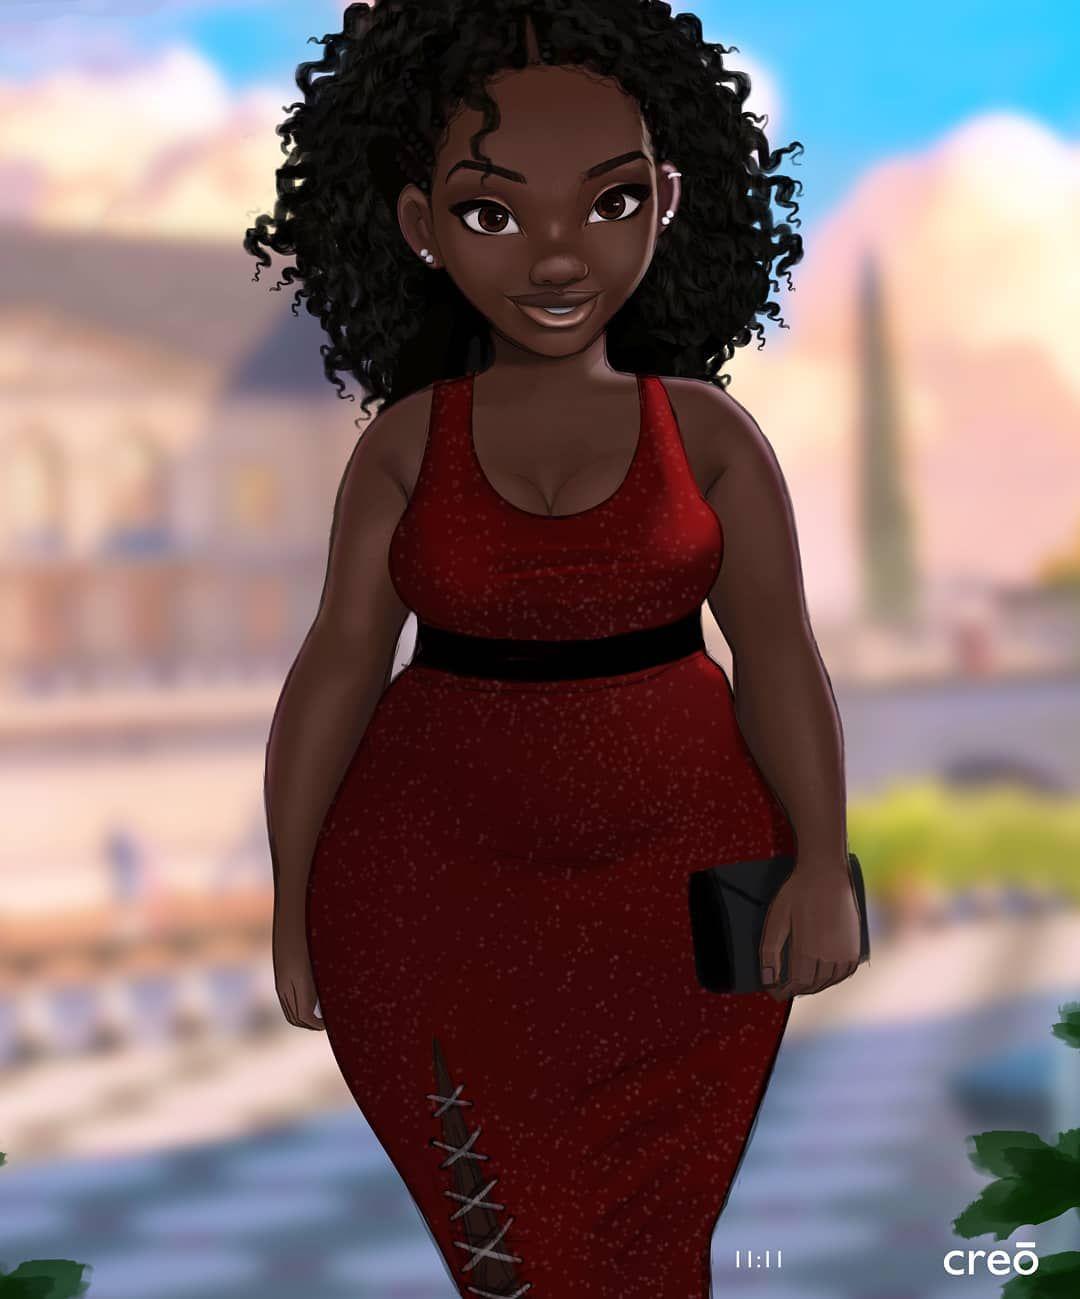 Curvy girl. Black girl art, Drawings of black girls, Black women art